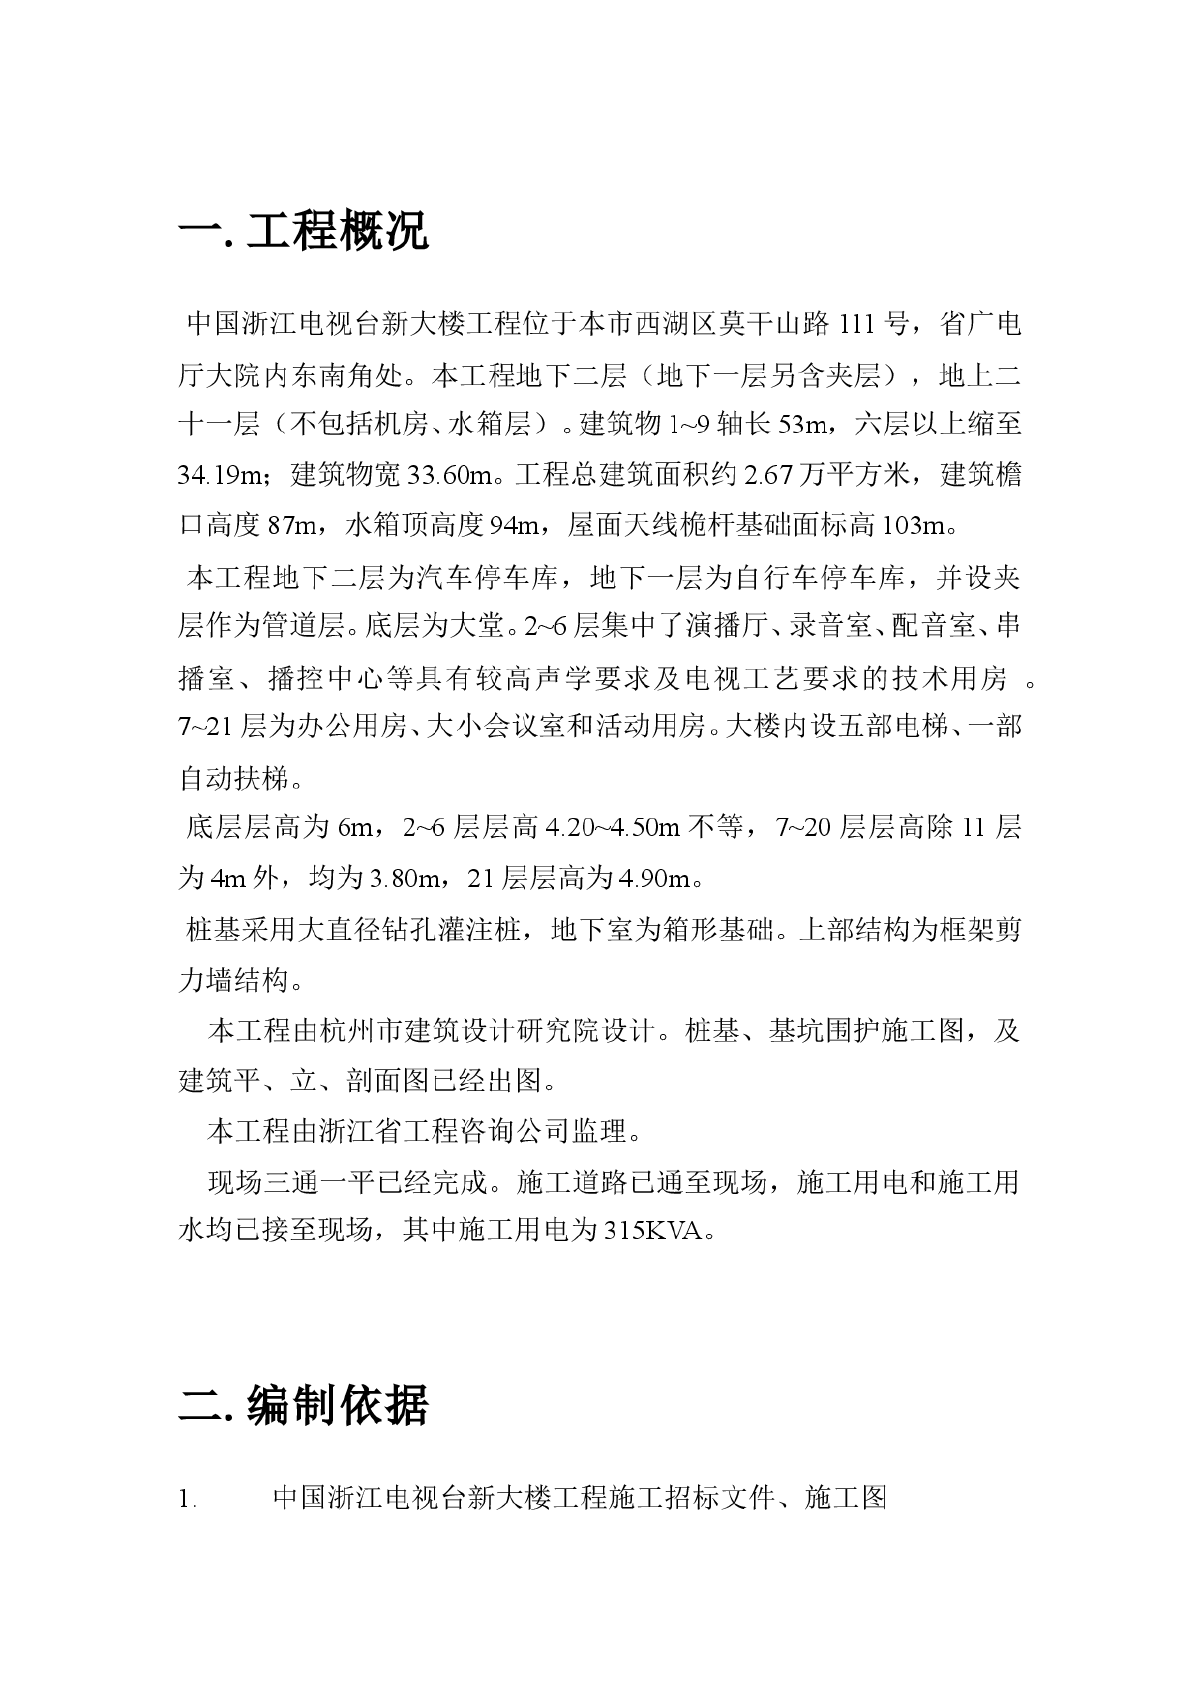 浙江电视台新大楼工程施工方案